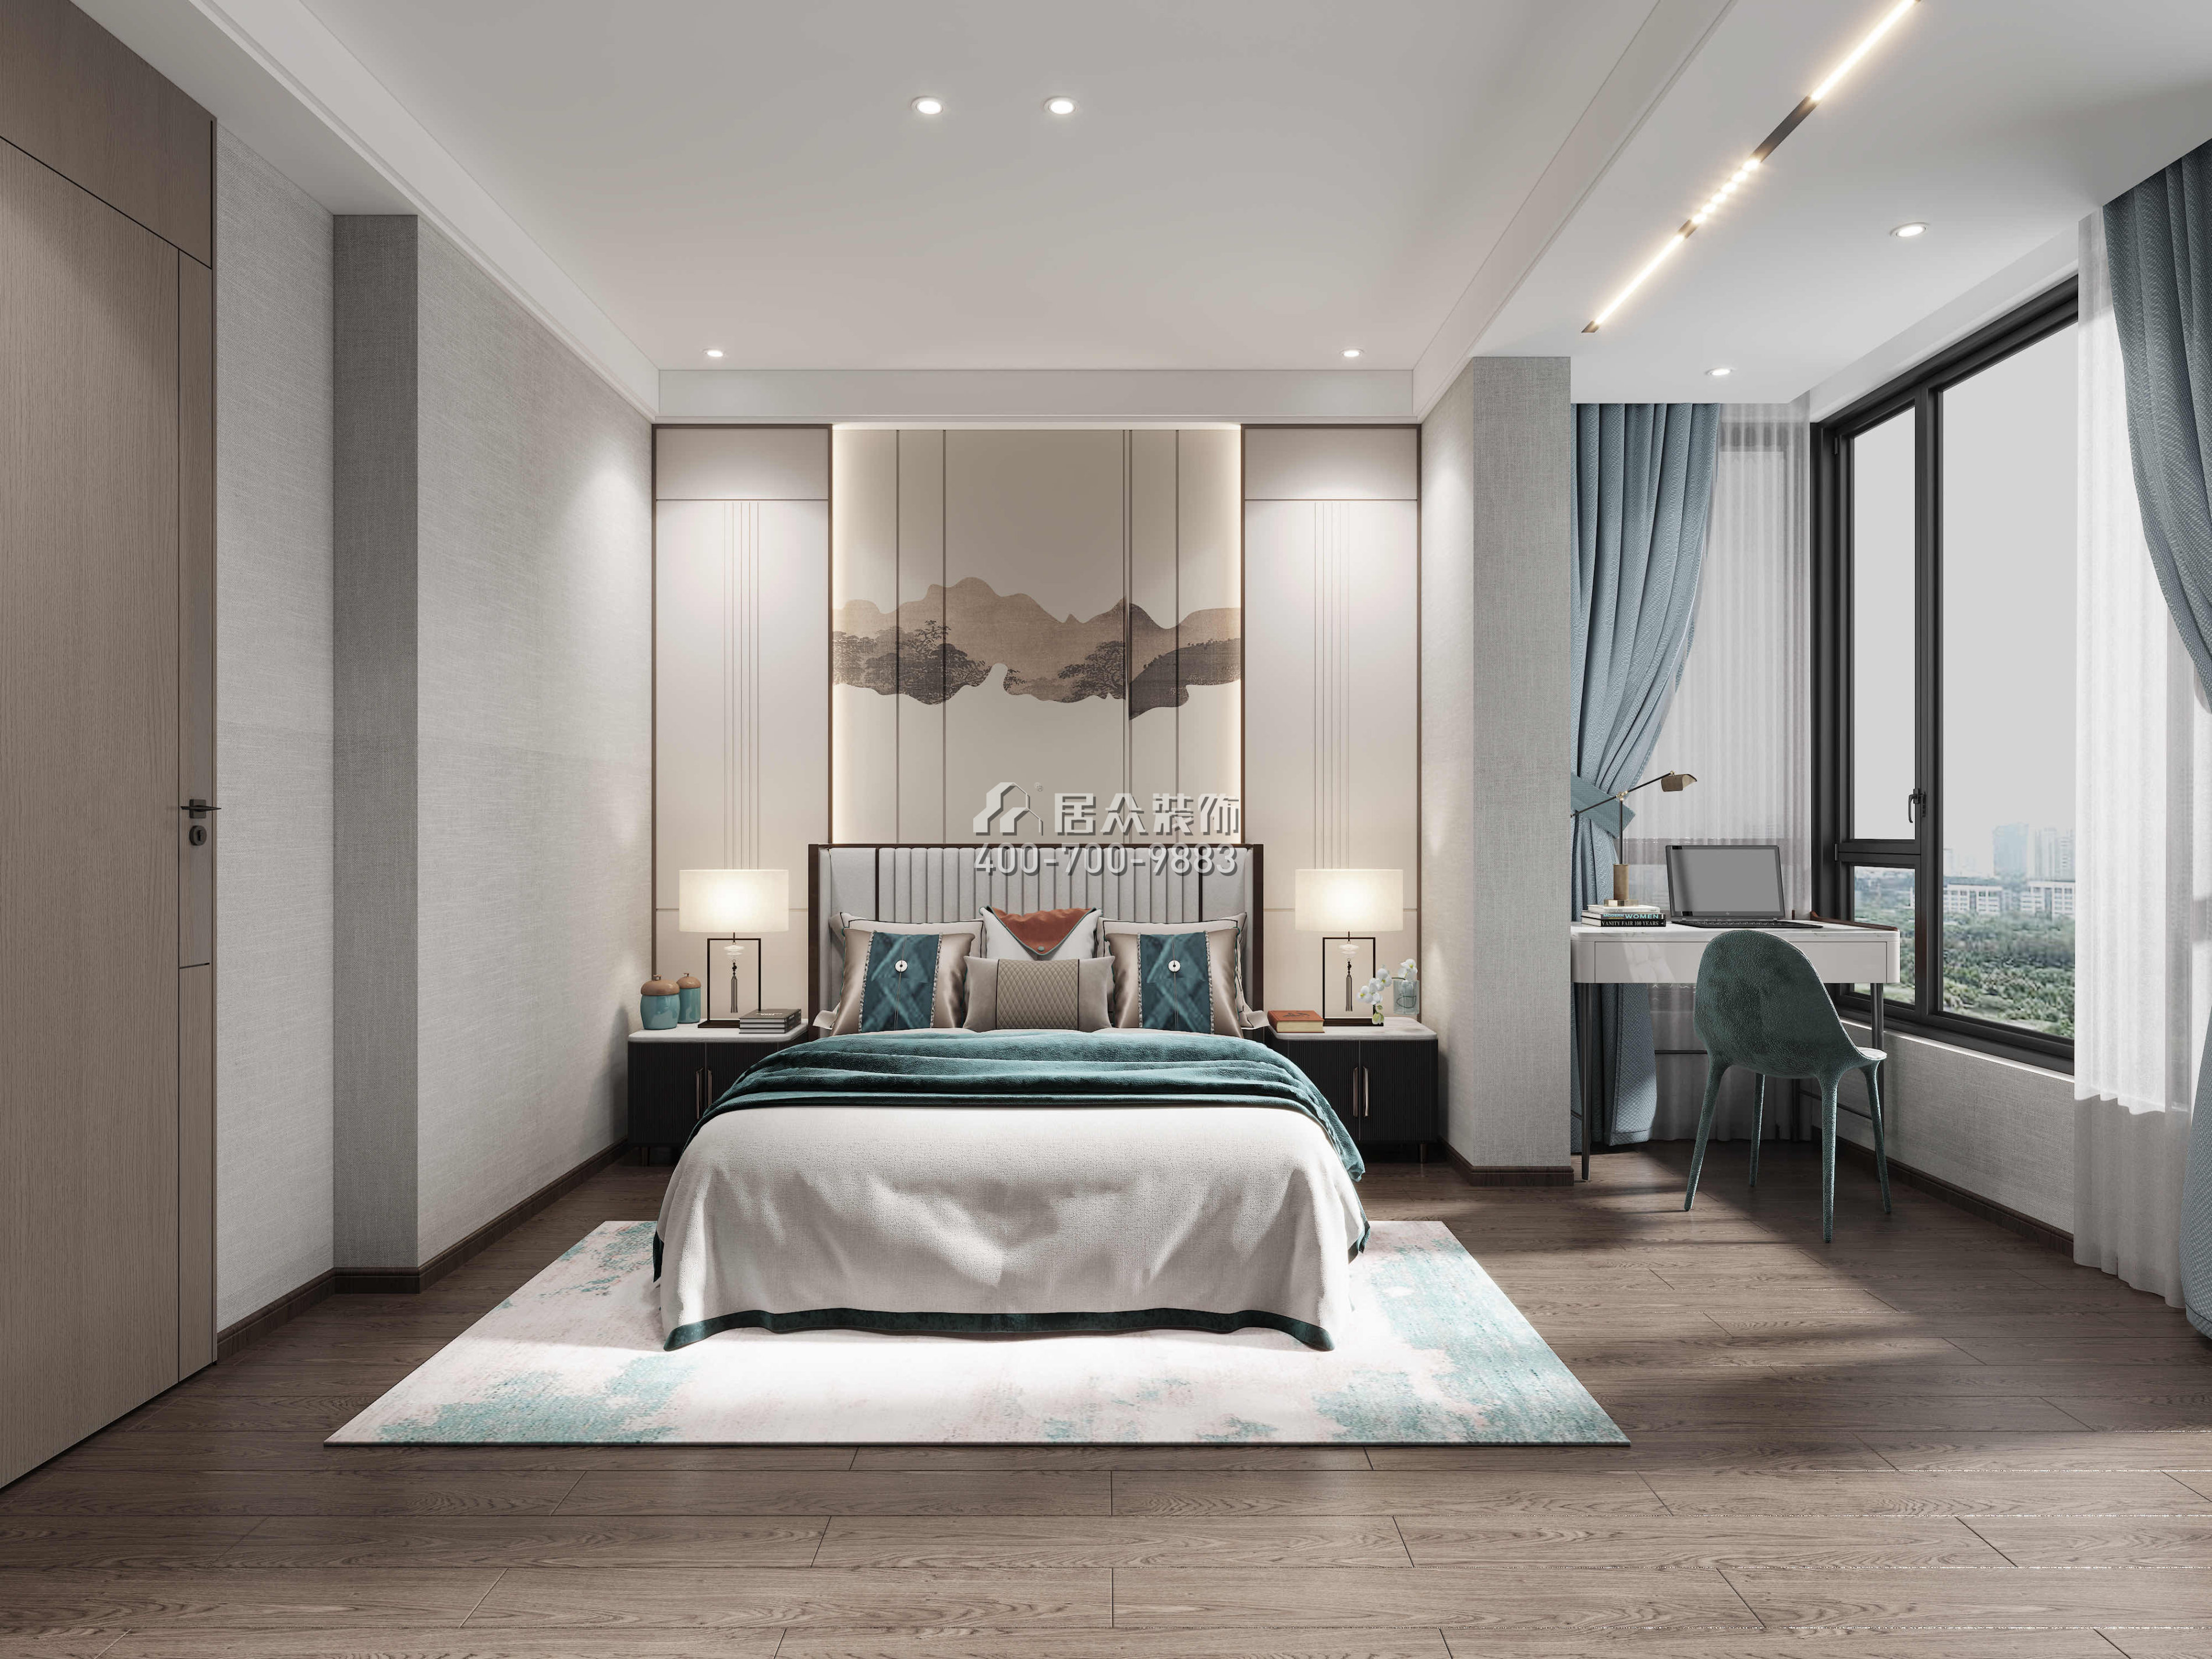 寶利豪庭500平方米中式風格復式戶型臥室裝修效果圖